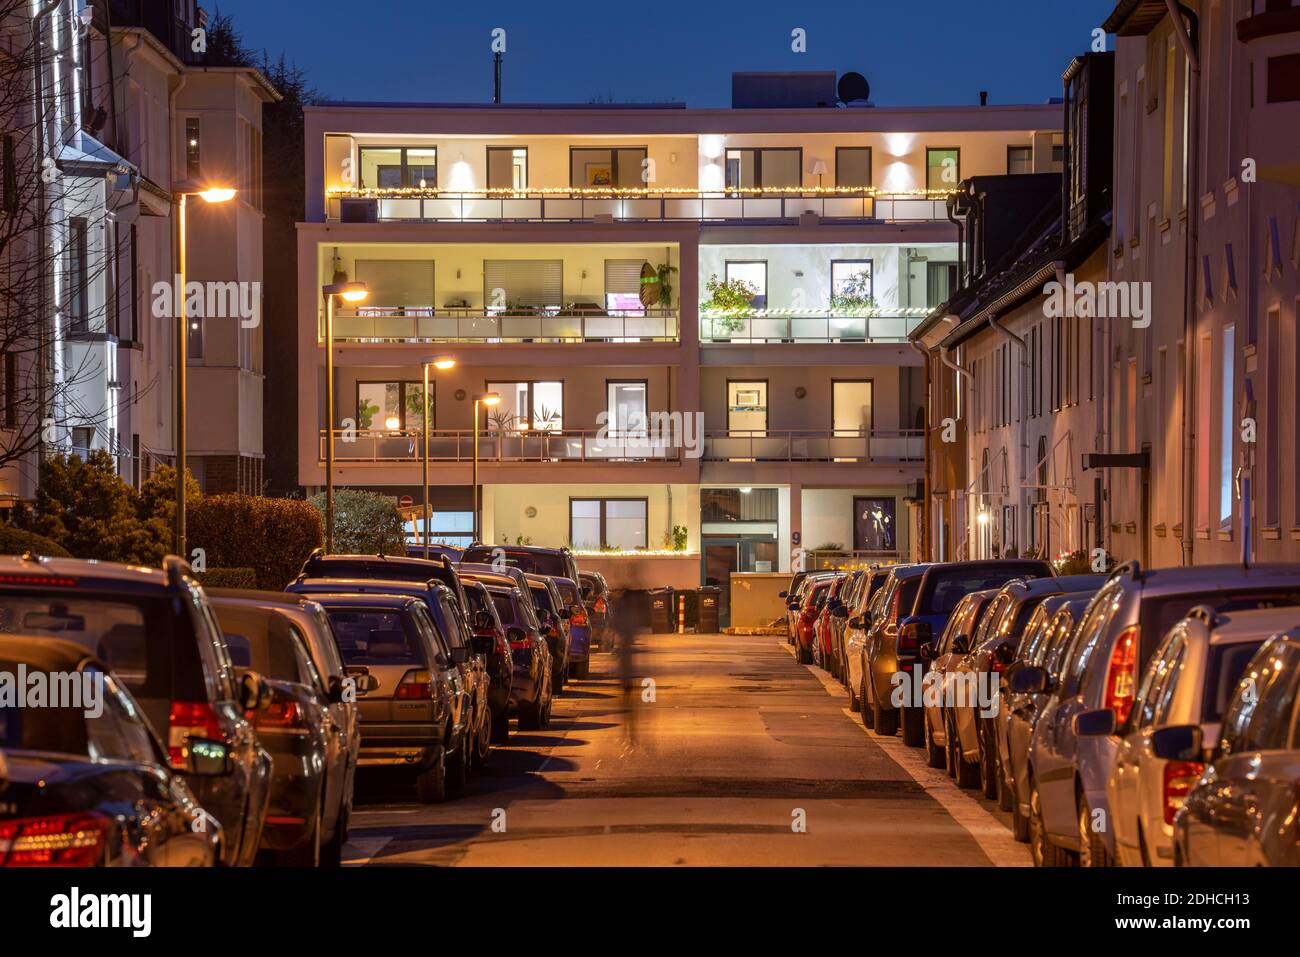 Rue résidentielle, de nombreux immeubles d'appartements dans un quartier résidentiel, soirée, éclairage lanterne, Essen, NRW, Allemagne Banque D'Images